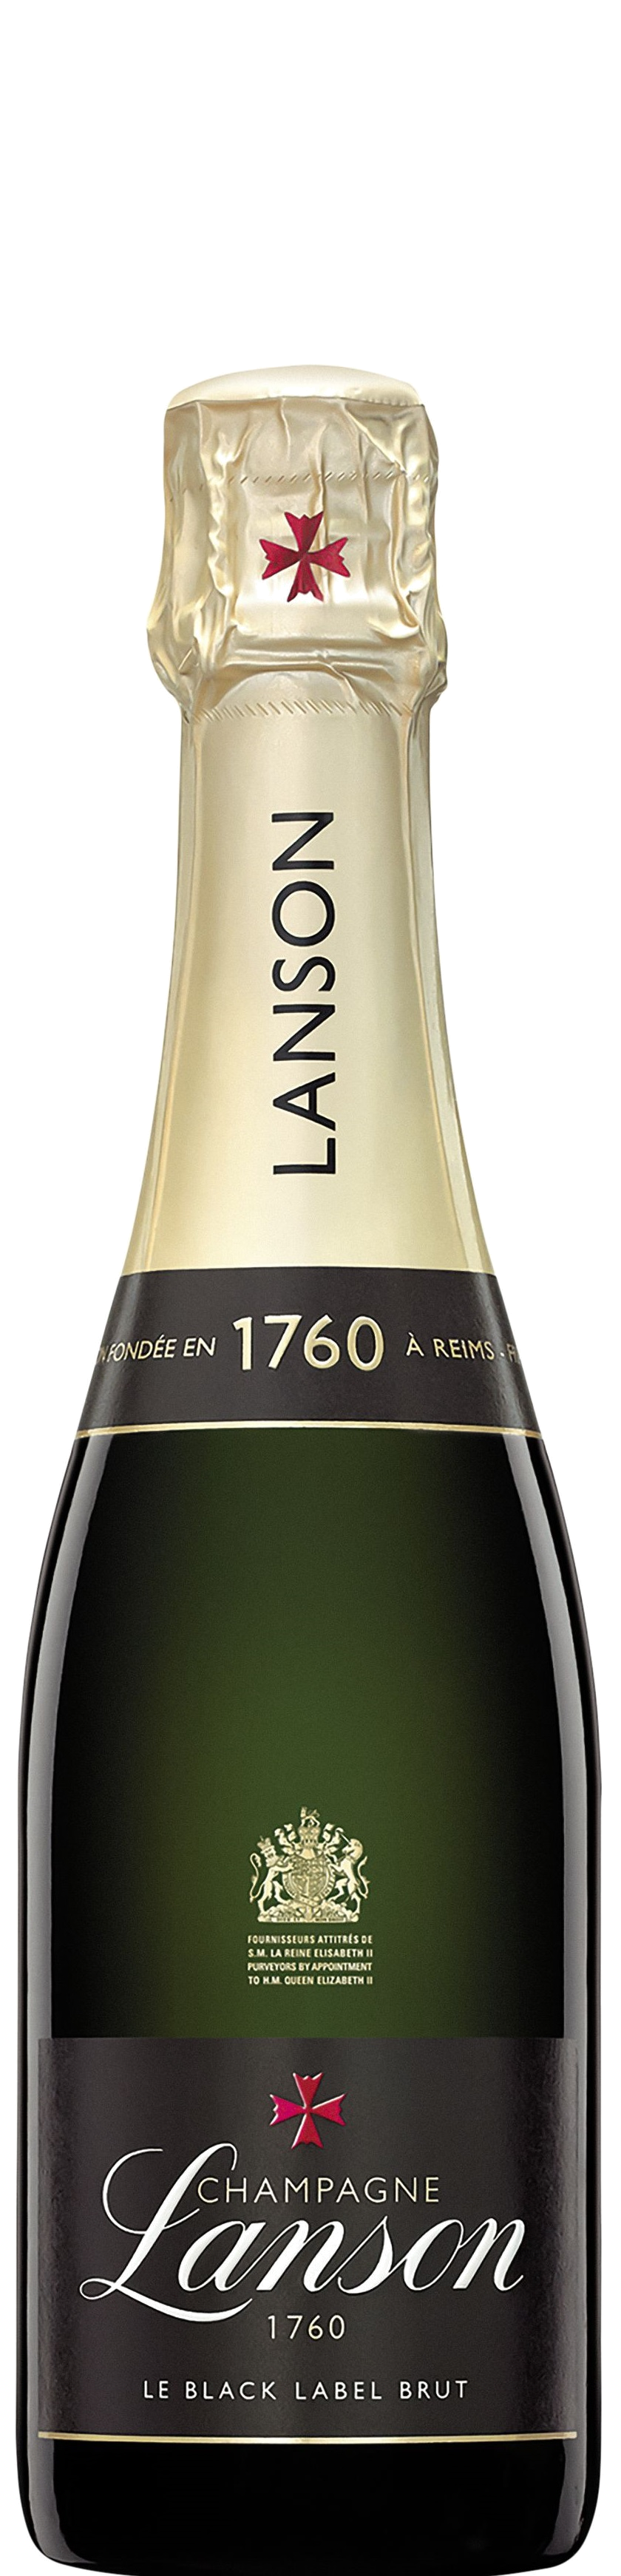 Champagne Lanson Le Black Label Brut 0,375L